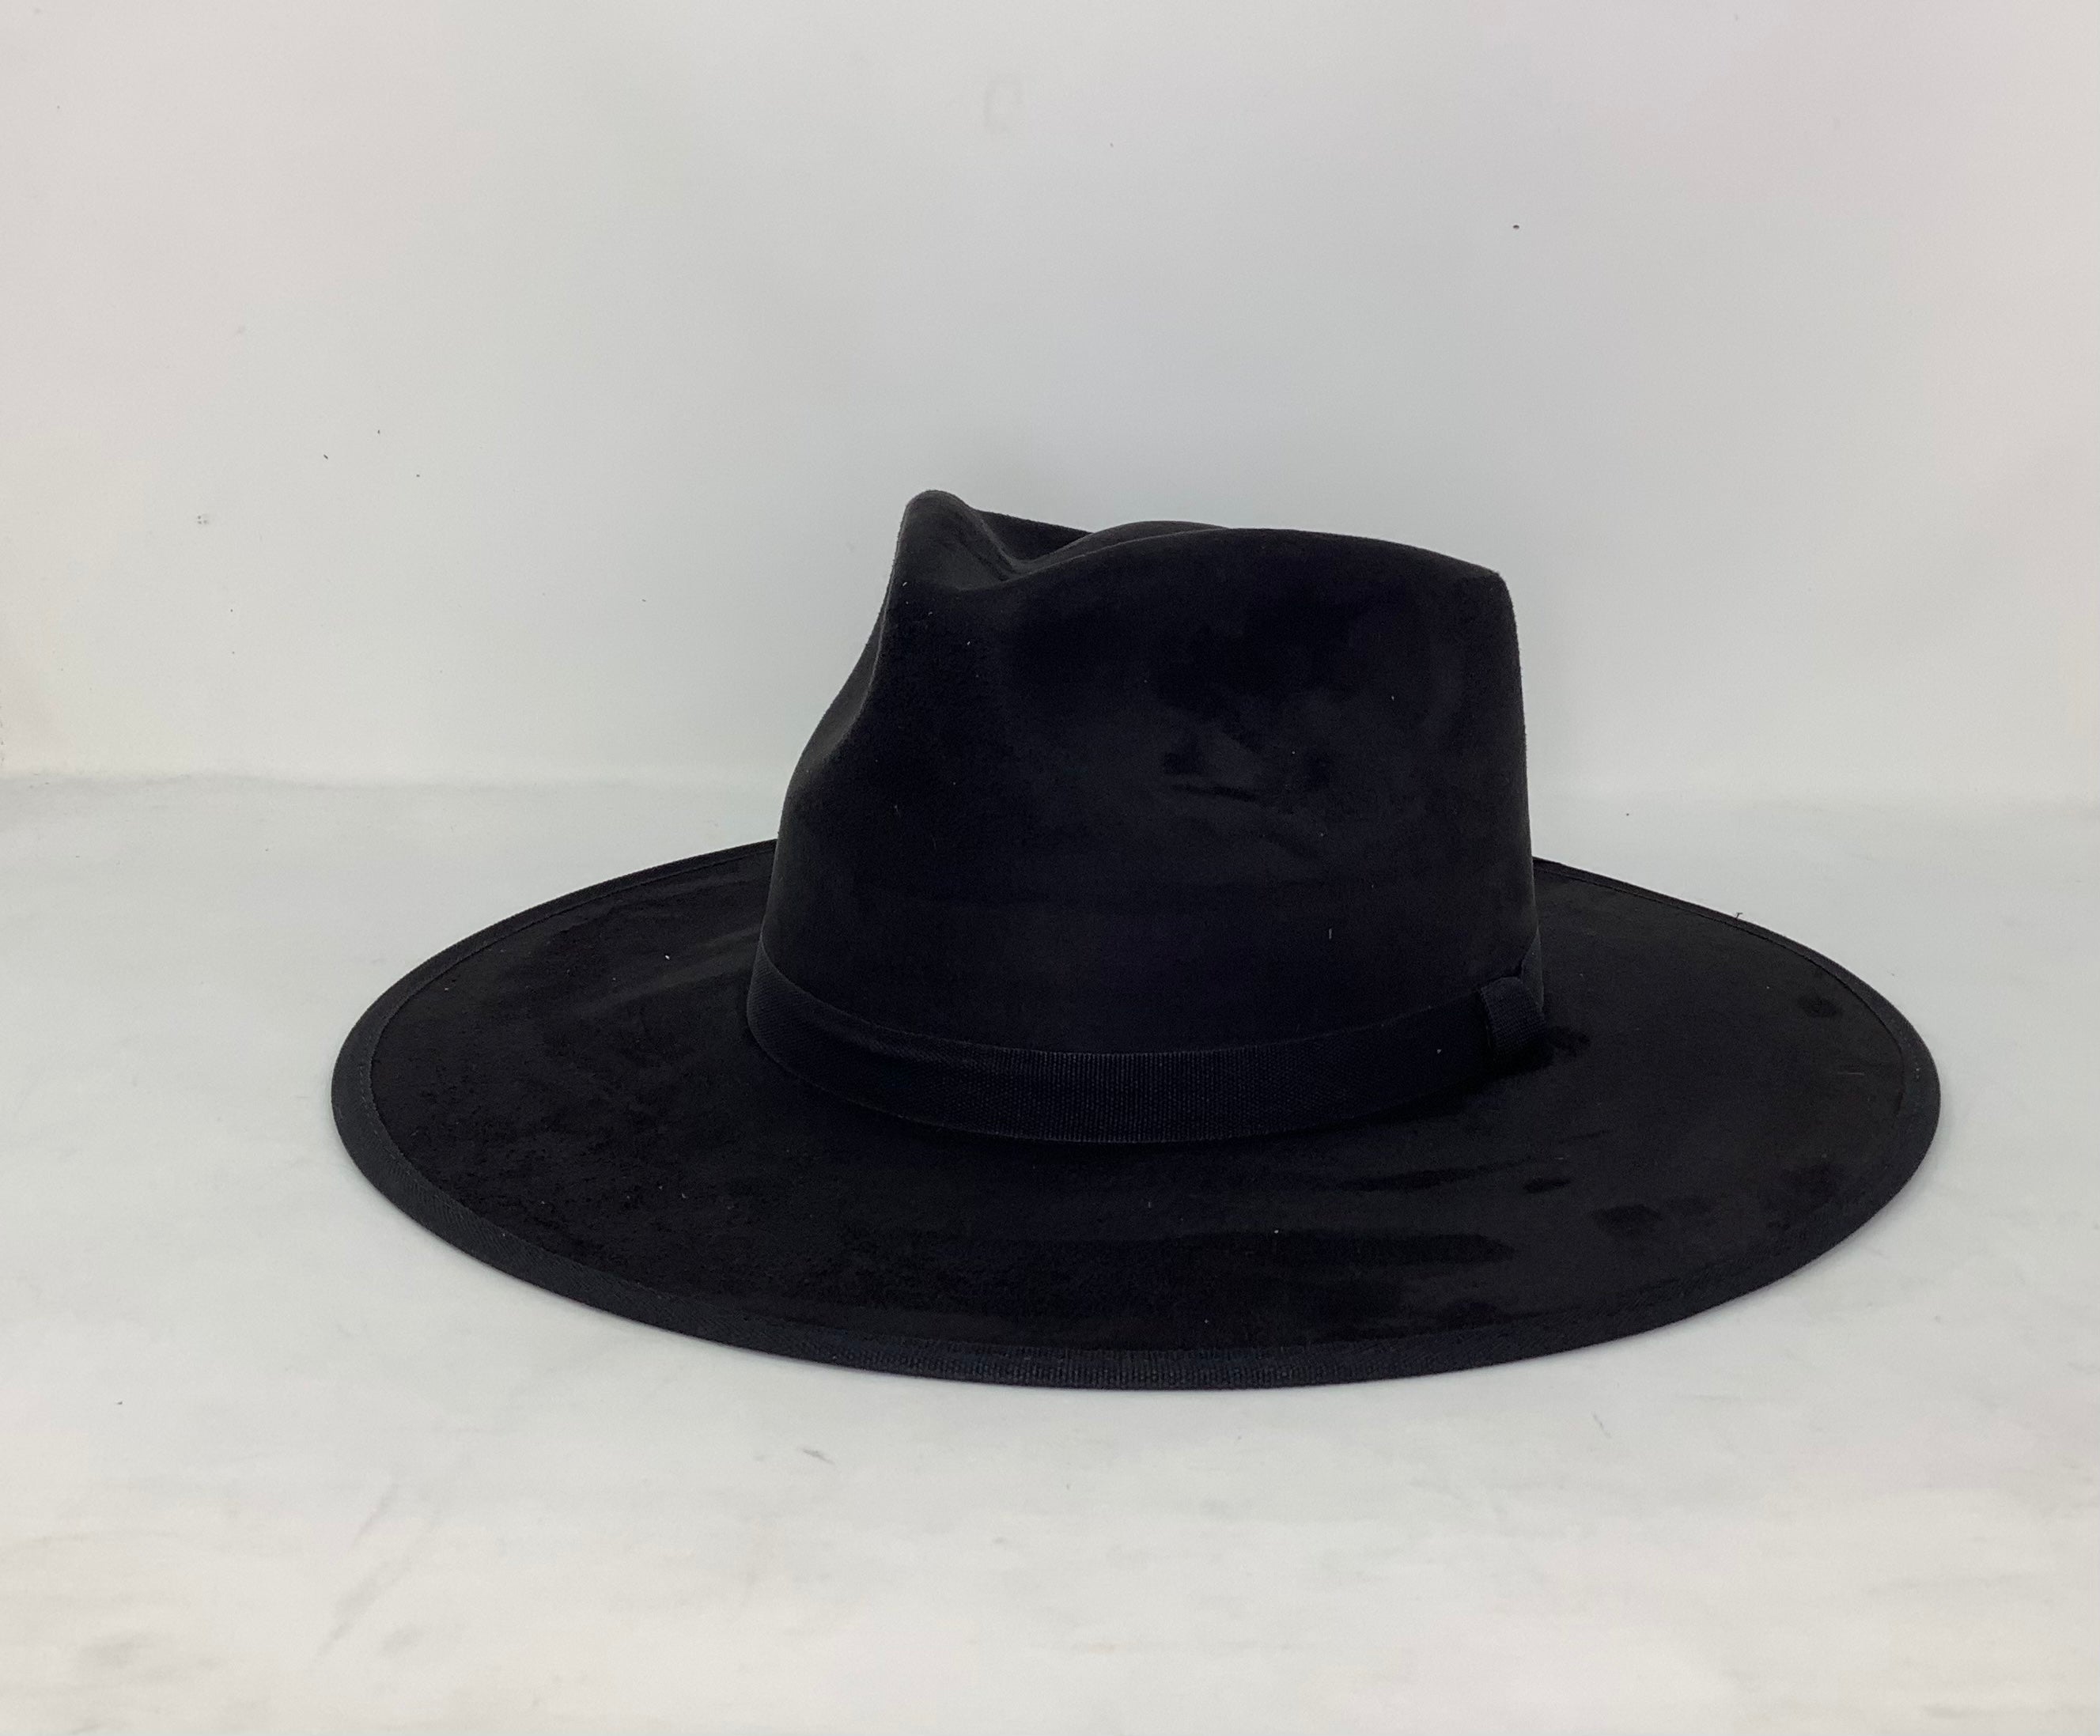 Savannah Flat Brim Suede Hat